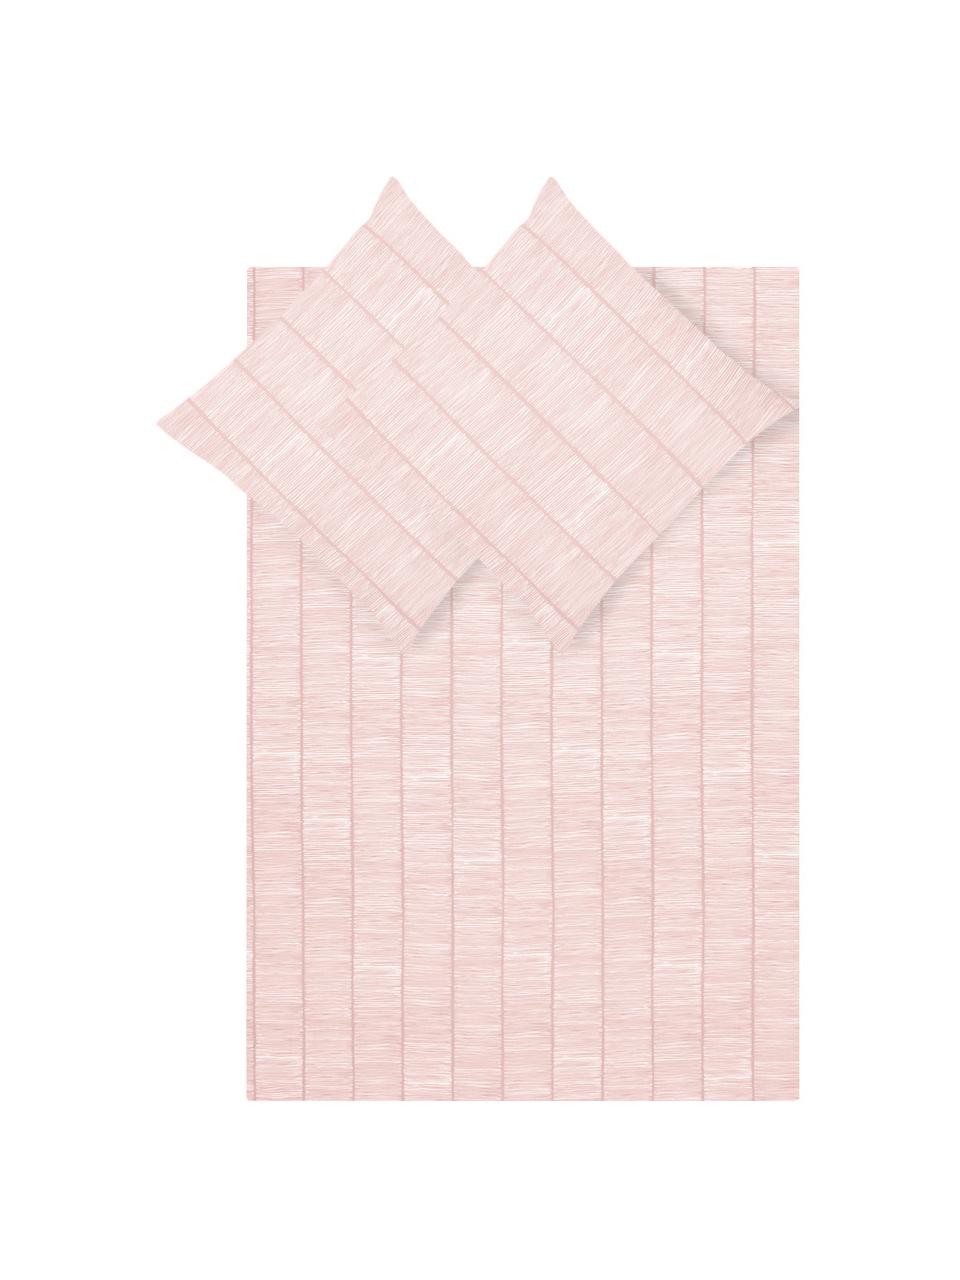 Pościel z bawełny renforcé Paulina, Blady różowy, biały, 240 x 220 cm